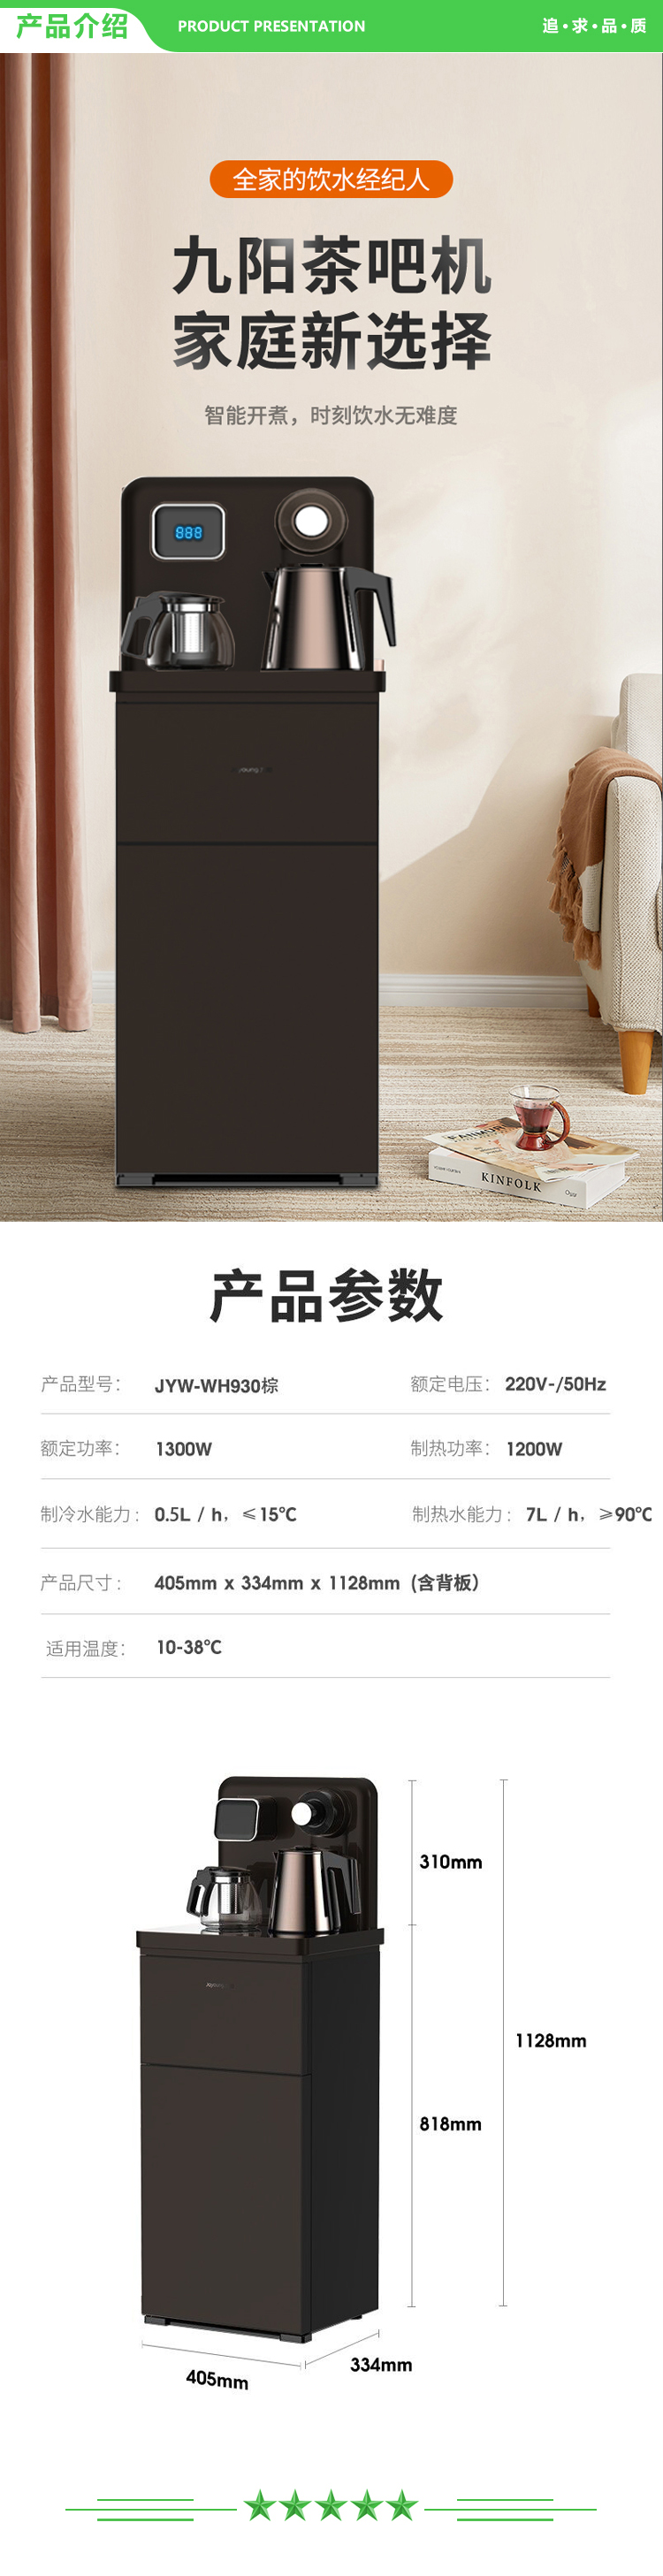 九阳 Joyoung JYW-WH930 茶吧机 立式饮水机下置智能泡茶水壶 棕色.jpg